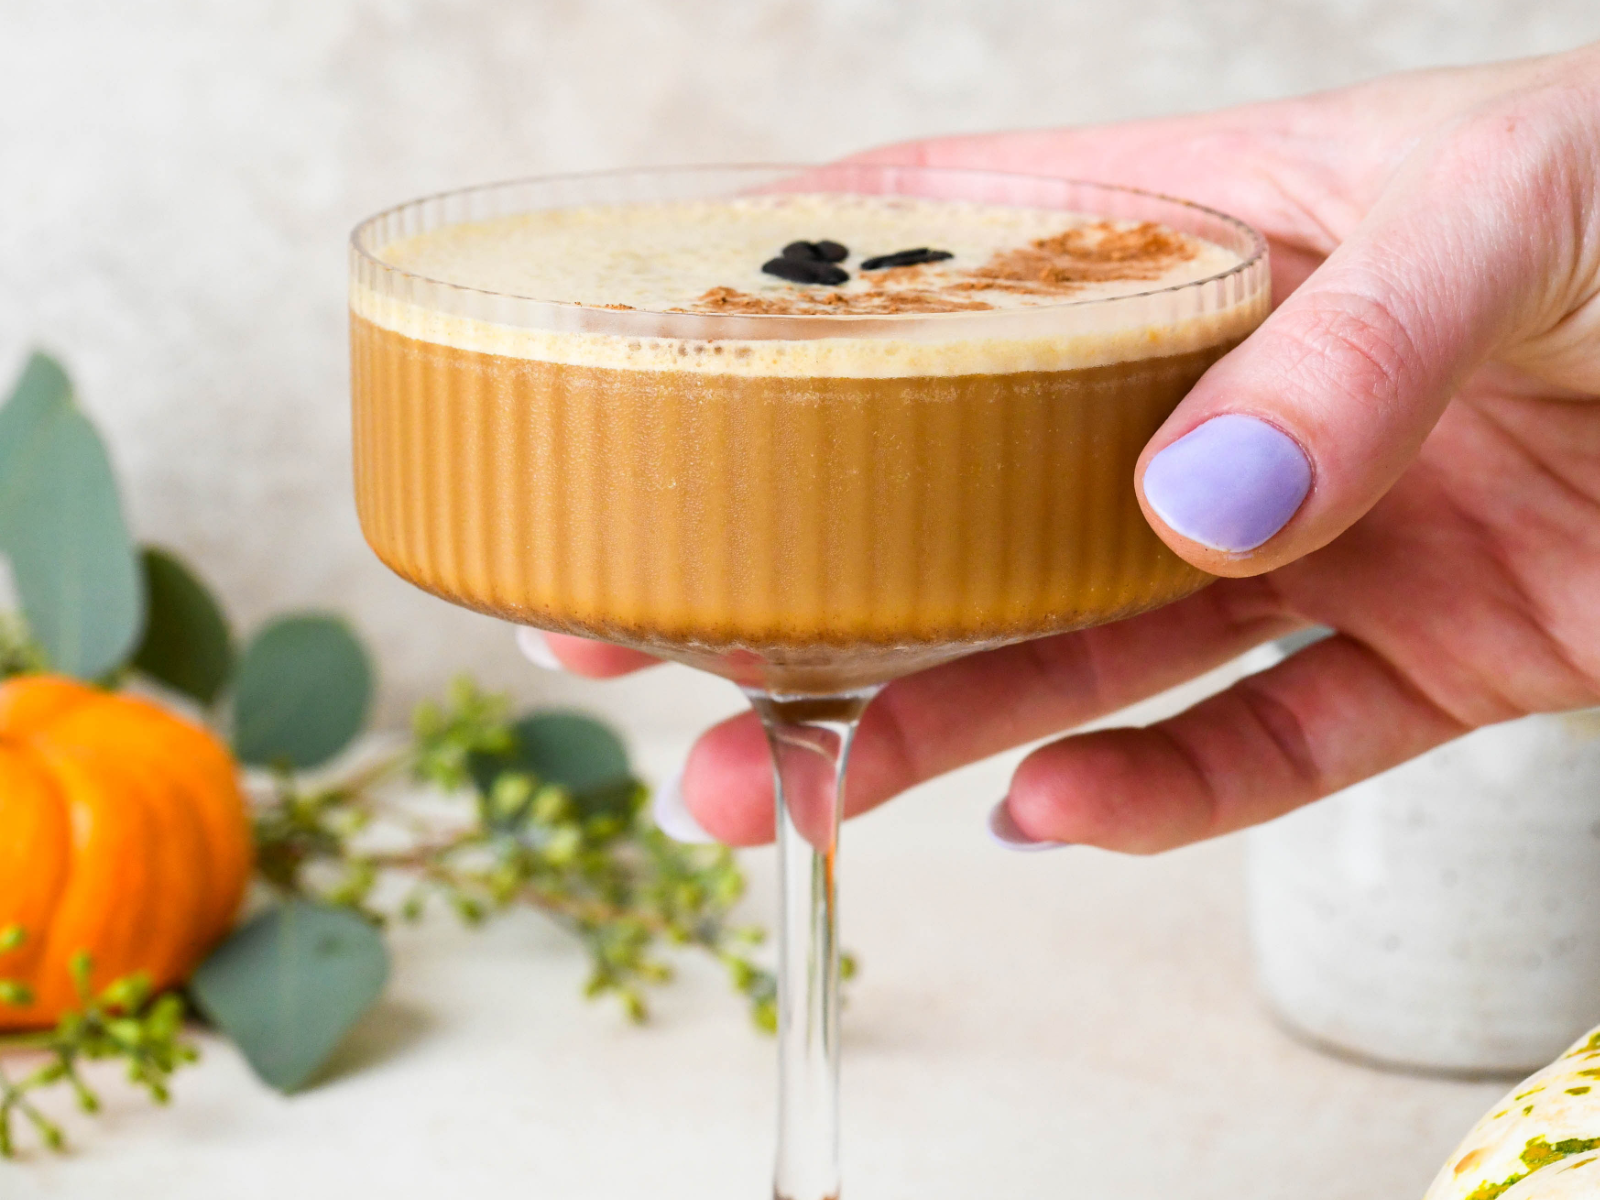 Pumpkin Spice Espresso Martini